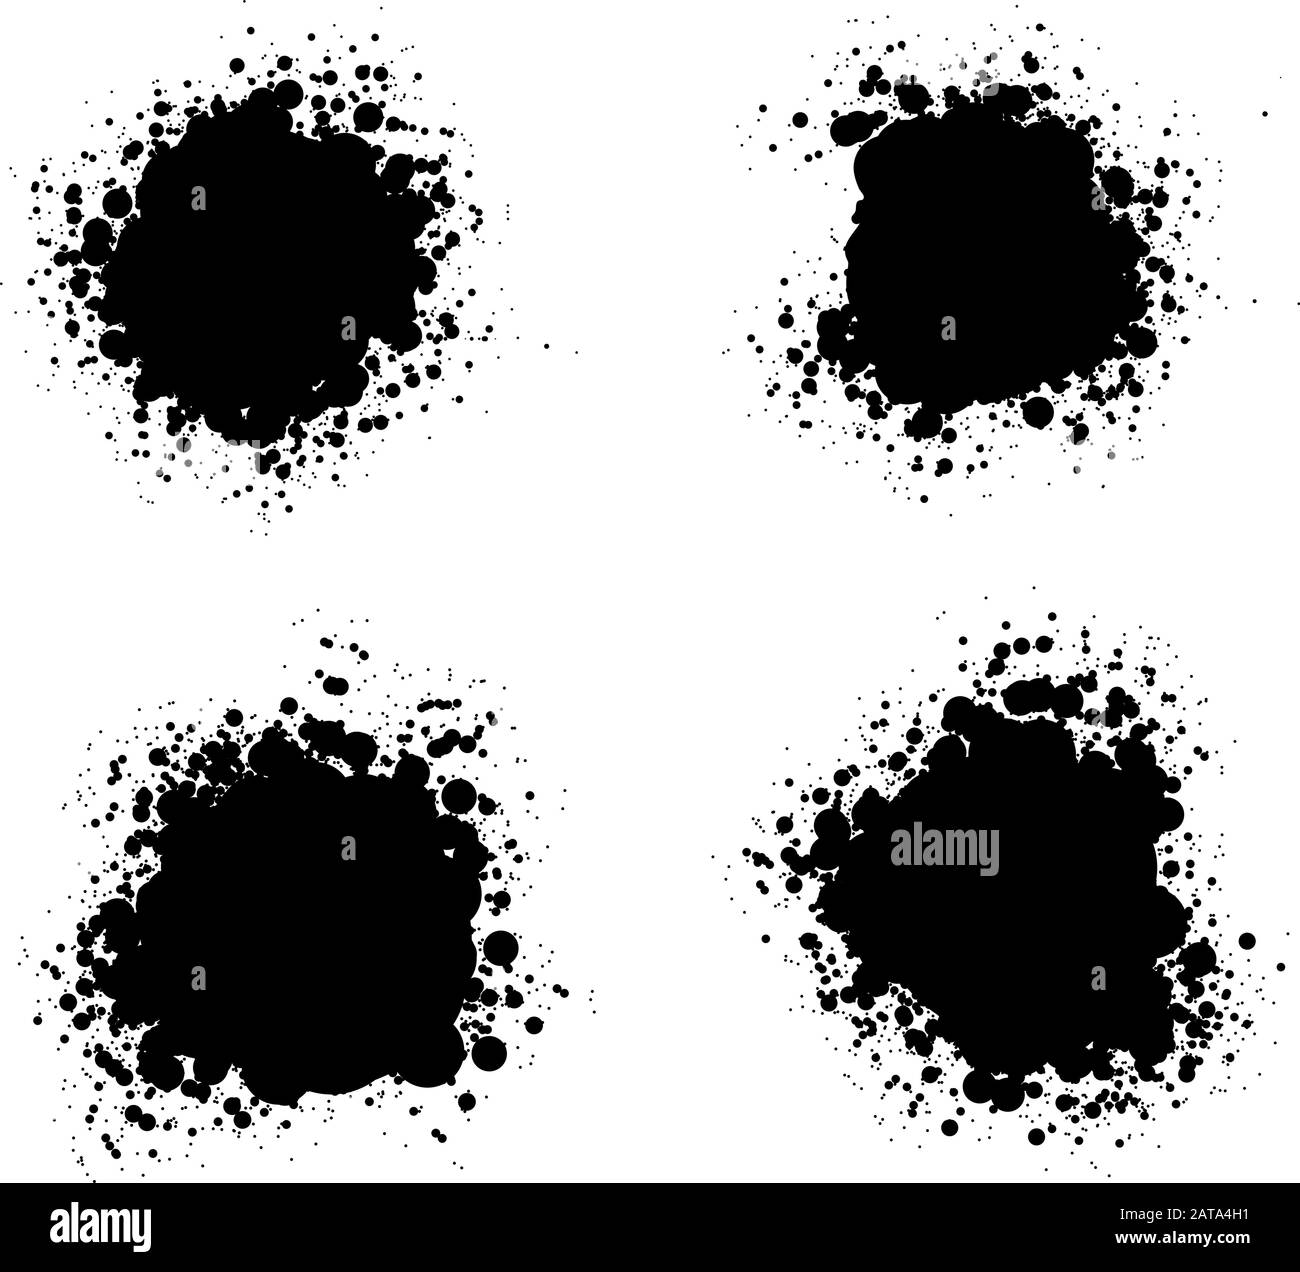 Plaques de boue noire - Illustration du vecteur Grunge Illustration de Vecteur